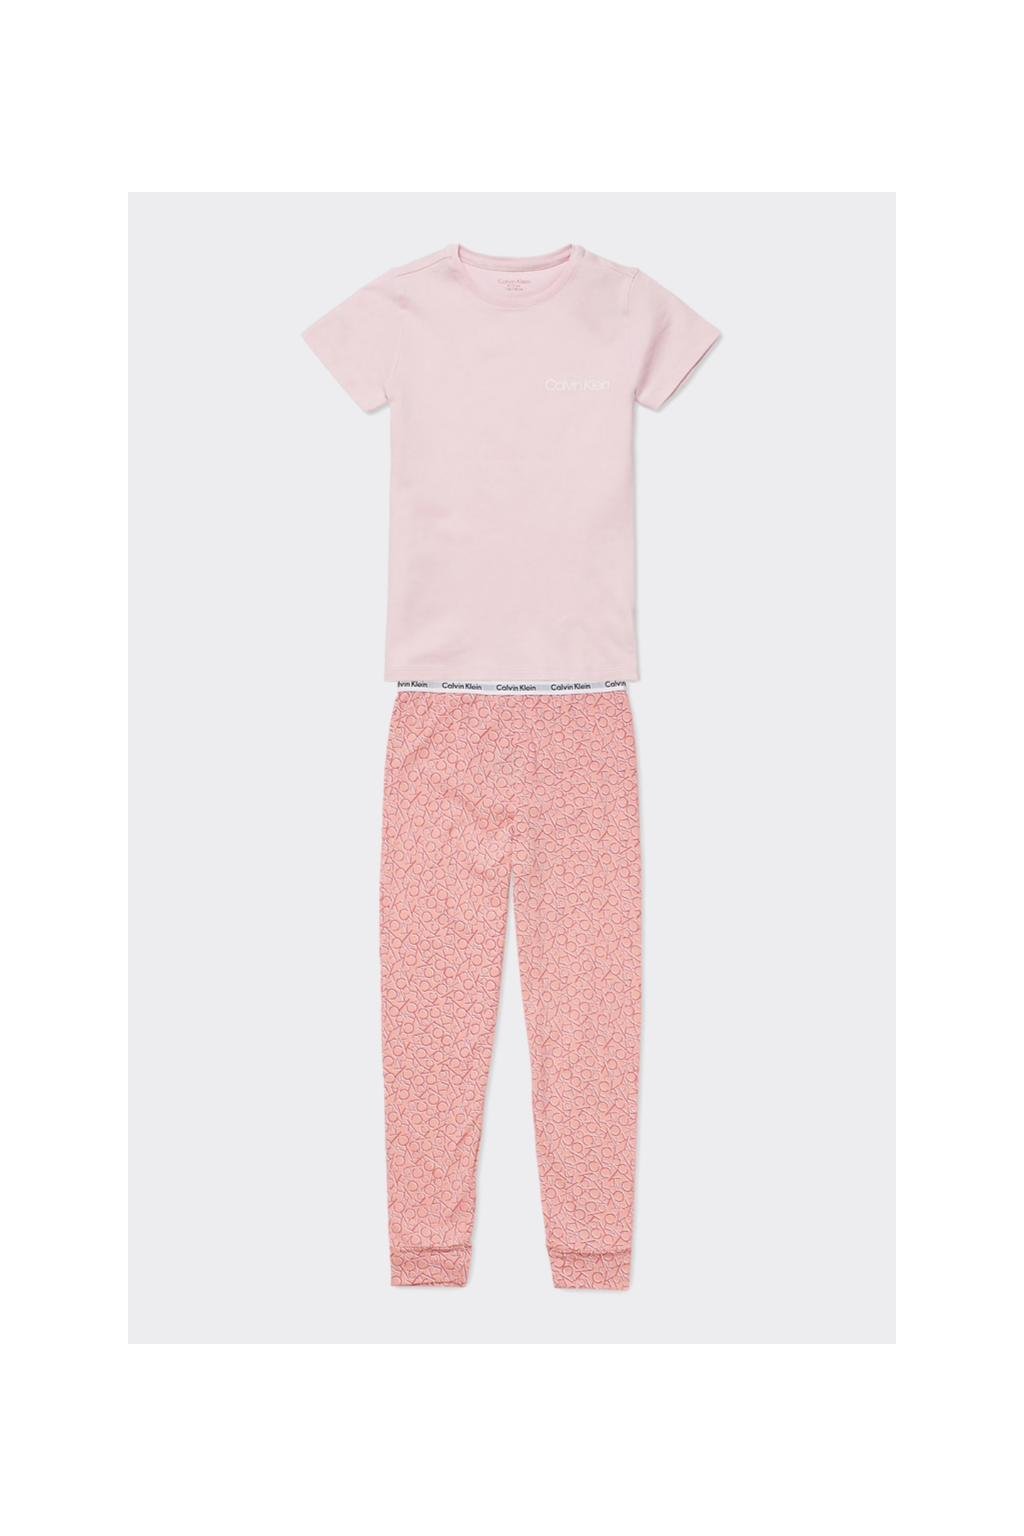 PRO DĚTI! Calvin Klein pyžamo Girls-světle  růžové